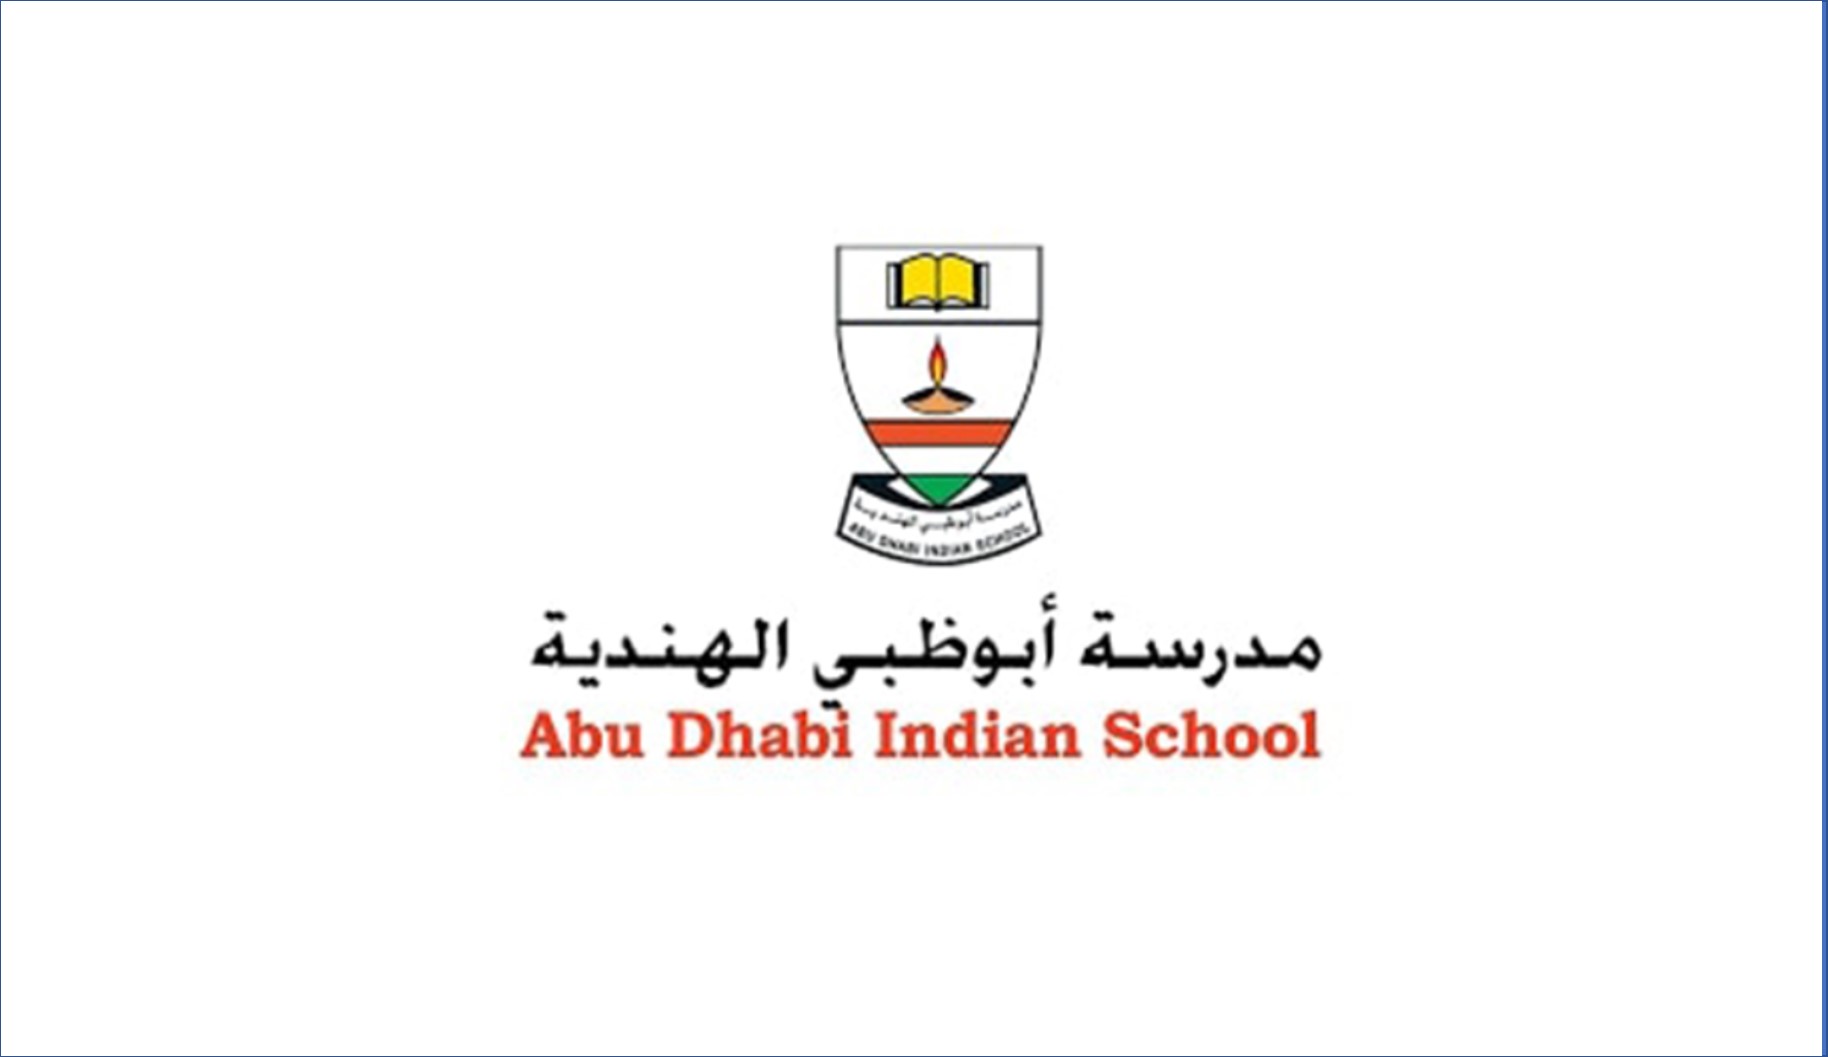 وظائف مدرسة ابوظبي الهندية لمختلف التخصصات